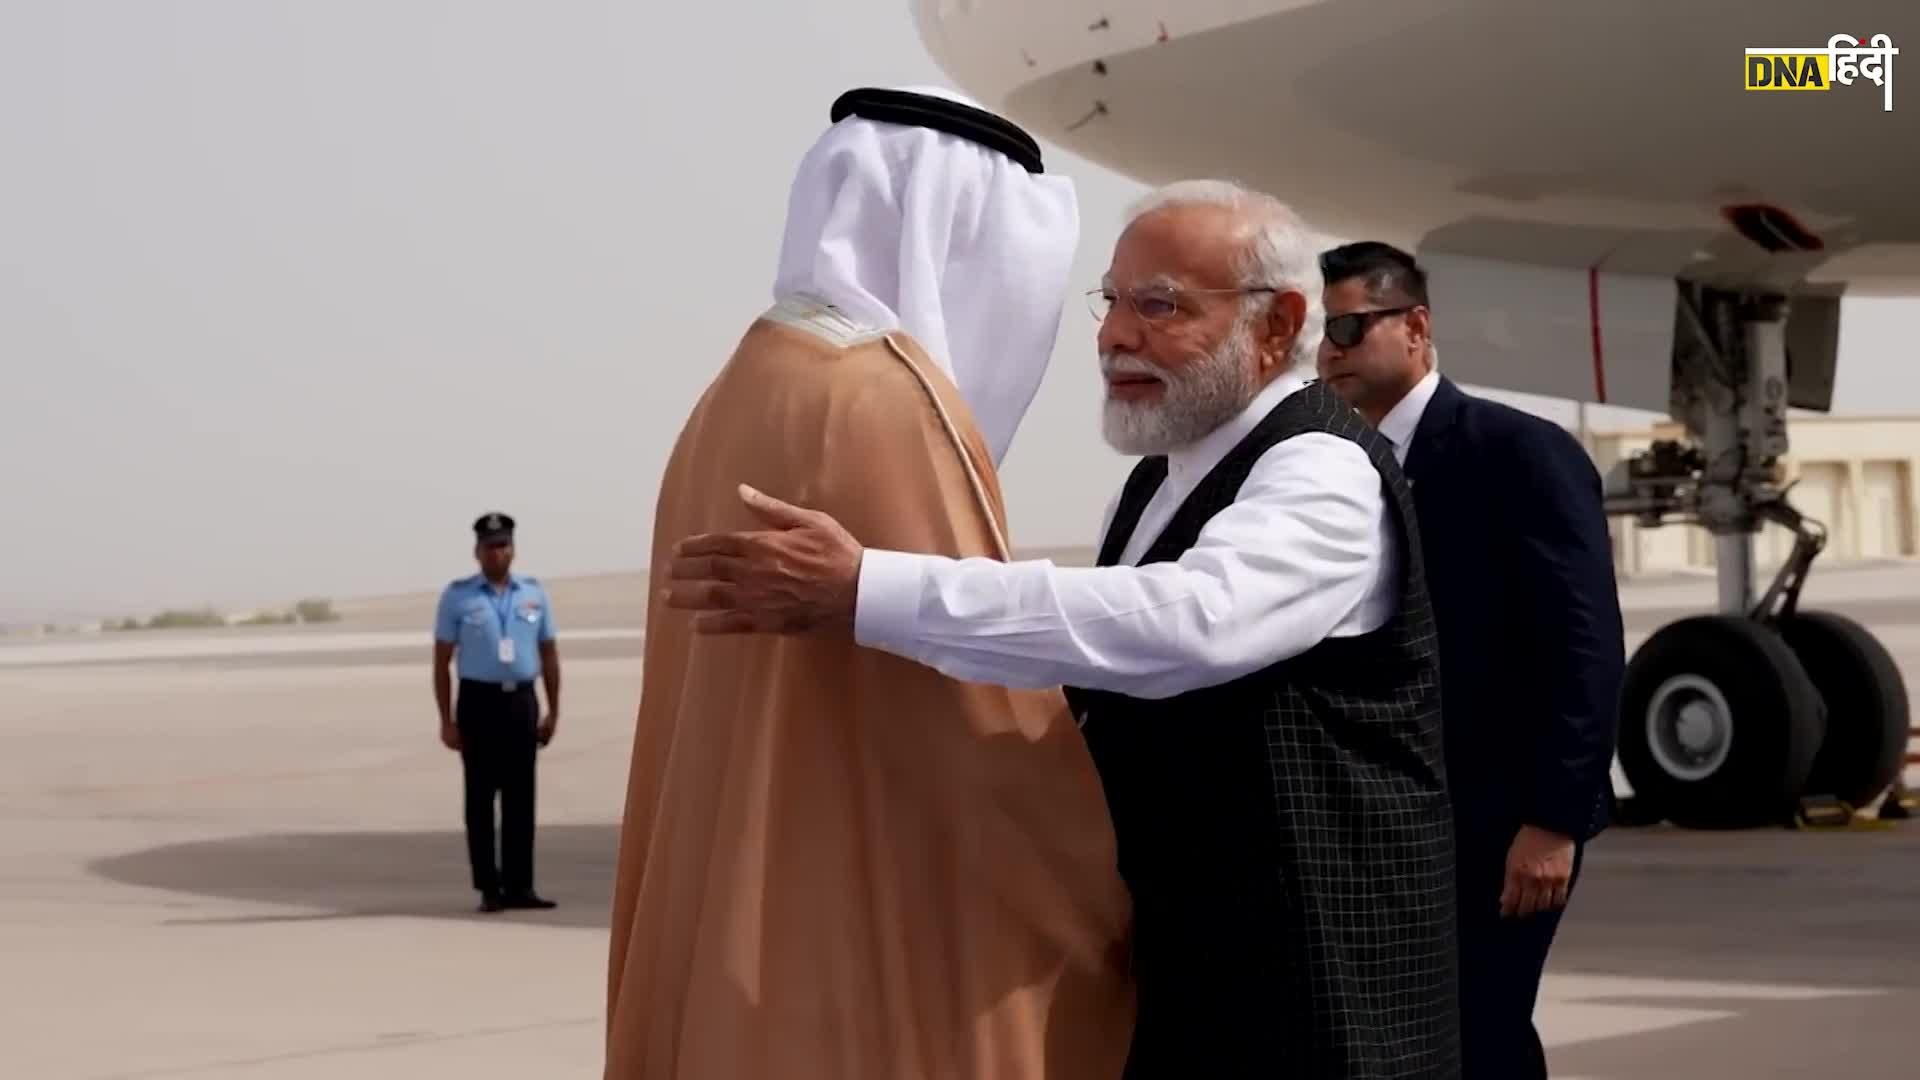 Video: Abu Dhabhi में IIT, भारत की करेंसी में व्यापार, PM Modi के UAE दौरे की बड़ी बातें